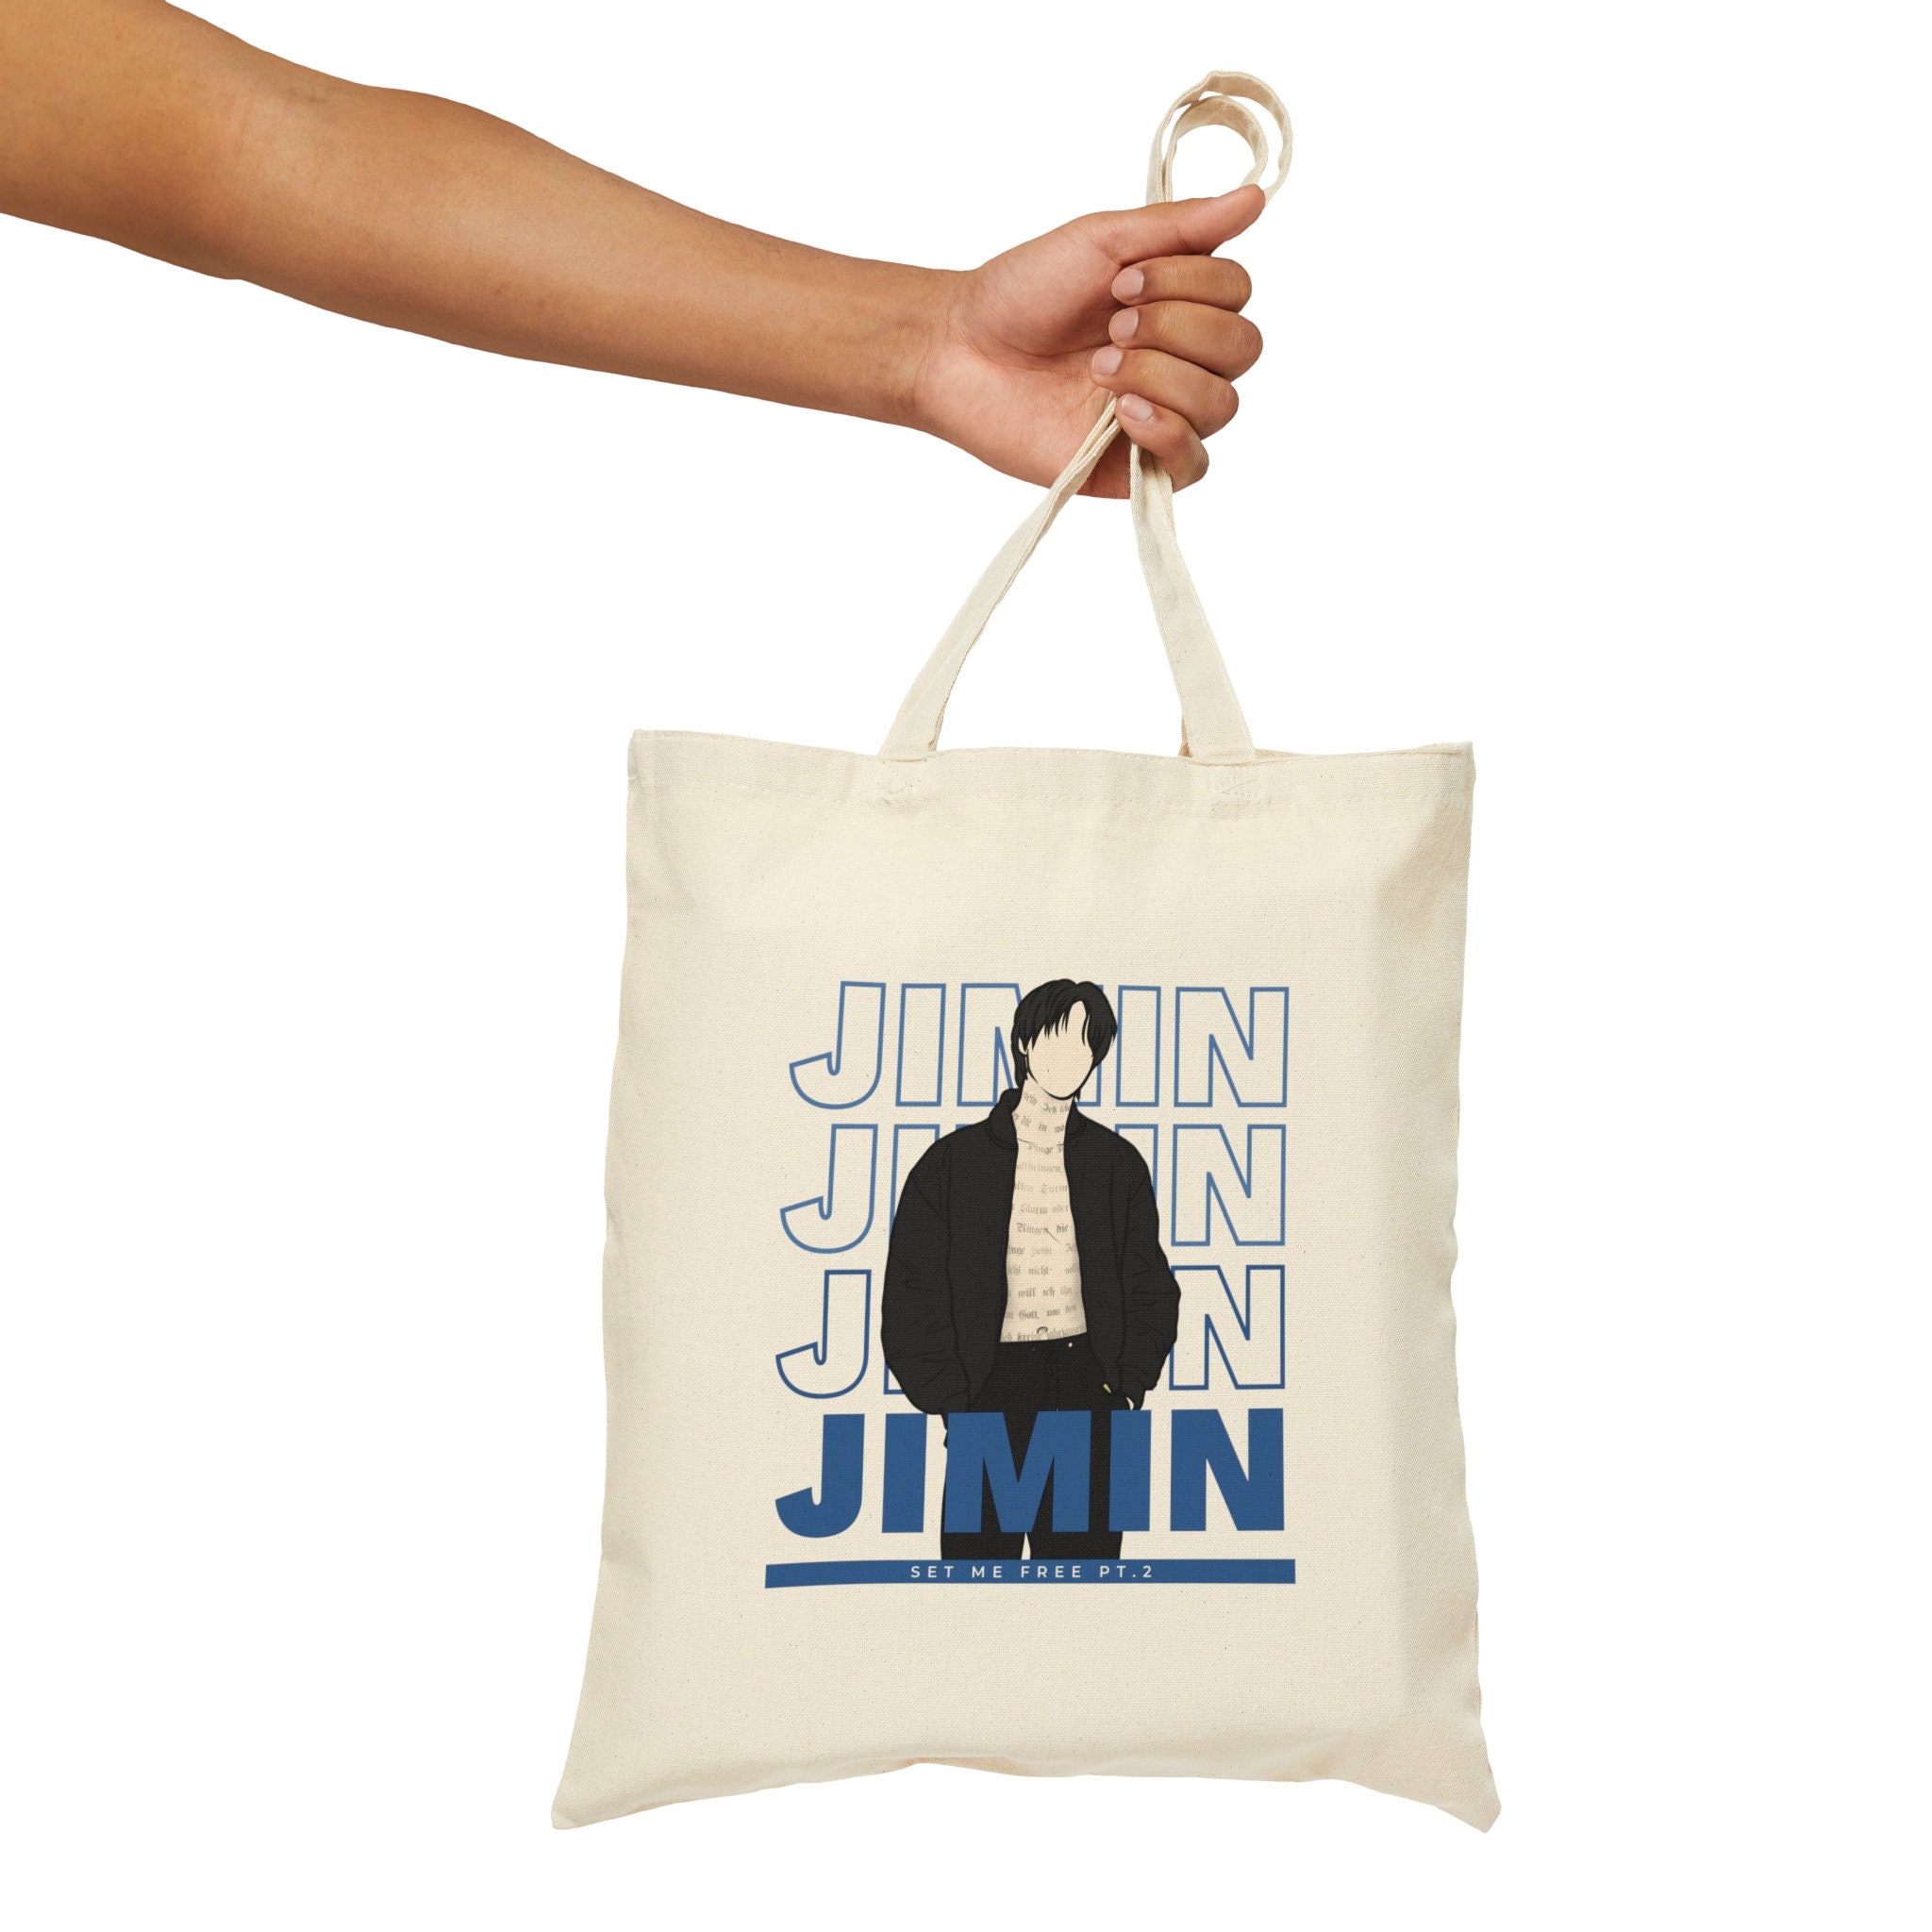 Jimin Jimin Bag Set Me Free Pt.2 BTS Jimin BTS Inspired 